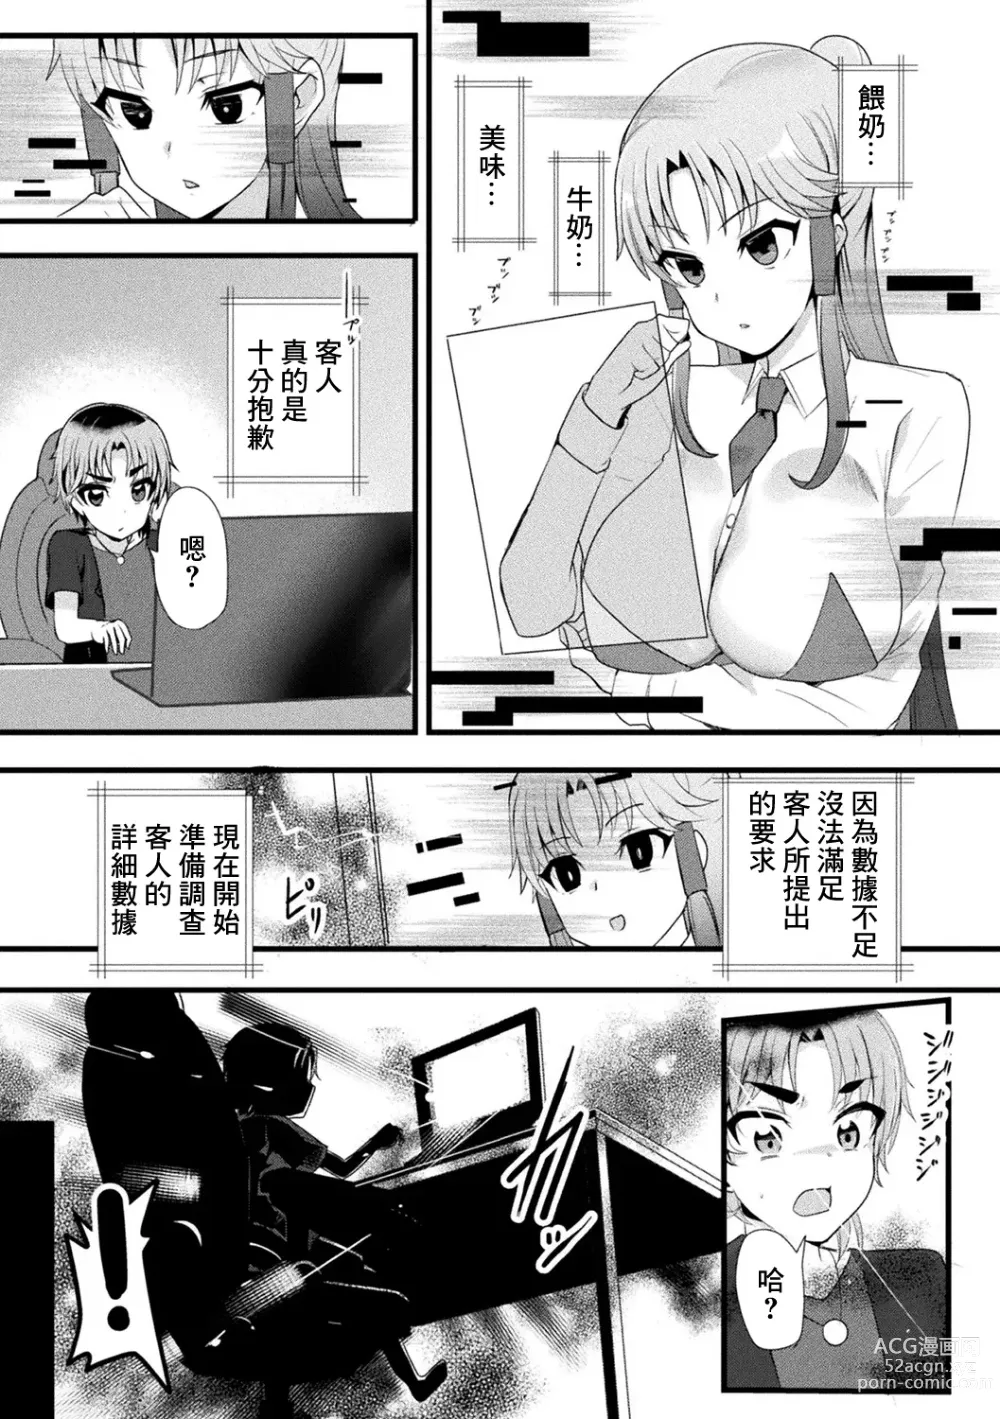 Page 3 of manga Mama Doko Doko - Mom! Where are you?